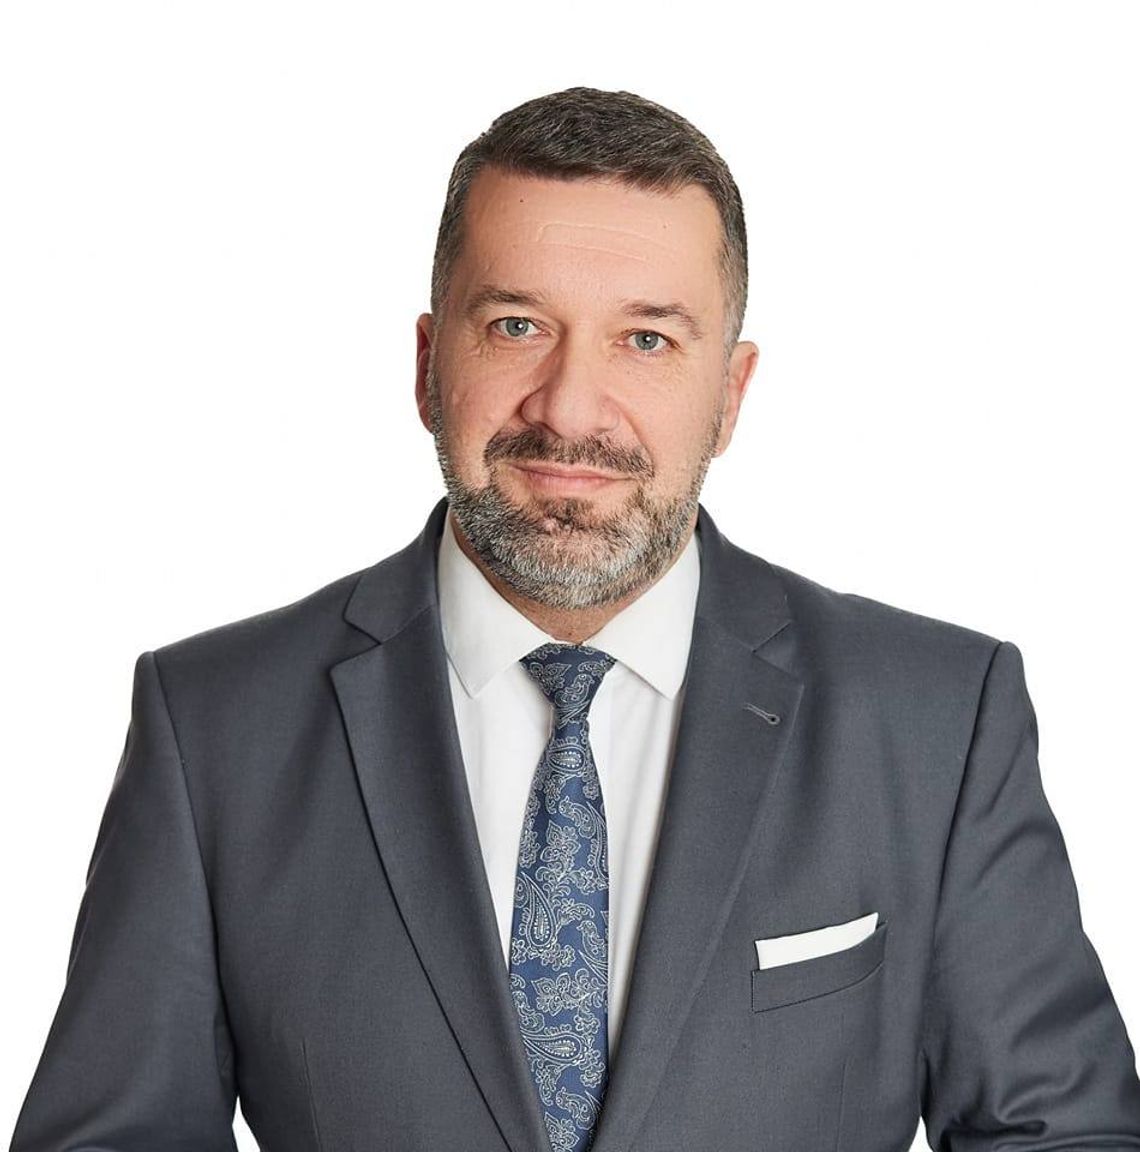 Potężny mandat zaufania dla Grzegorza Wołczańskiego - nowego Burmistrza Rymanowa